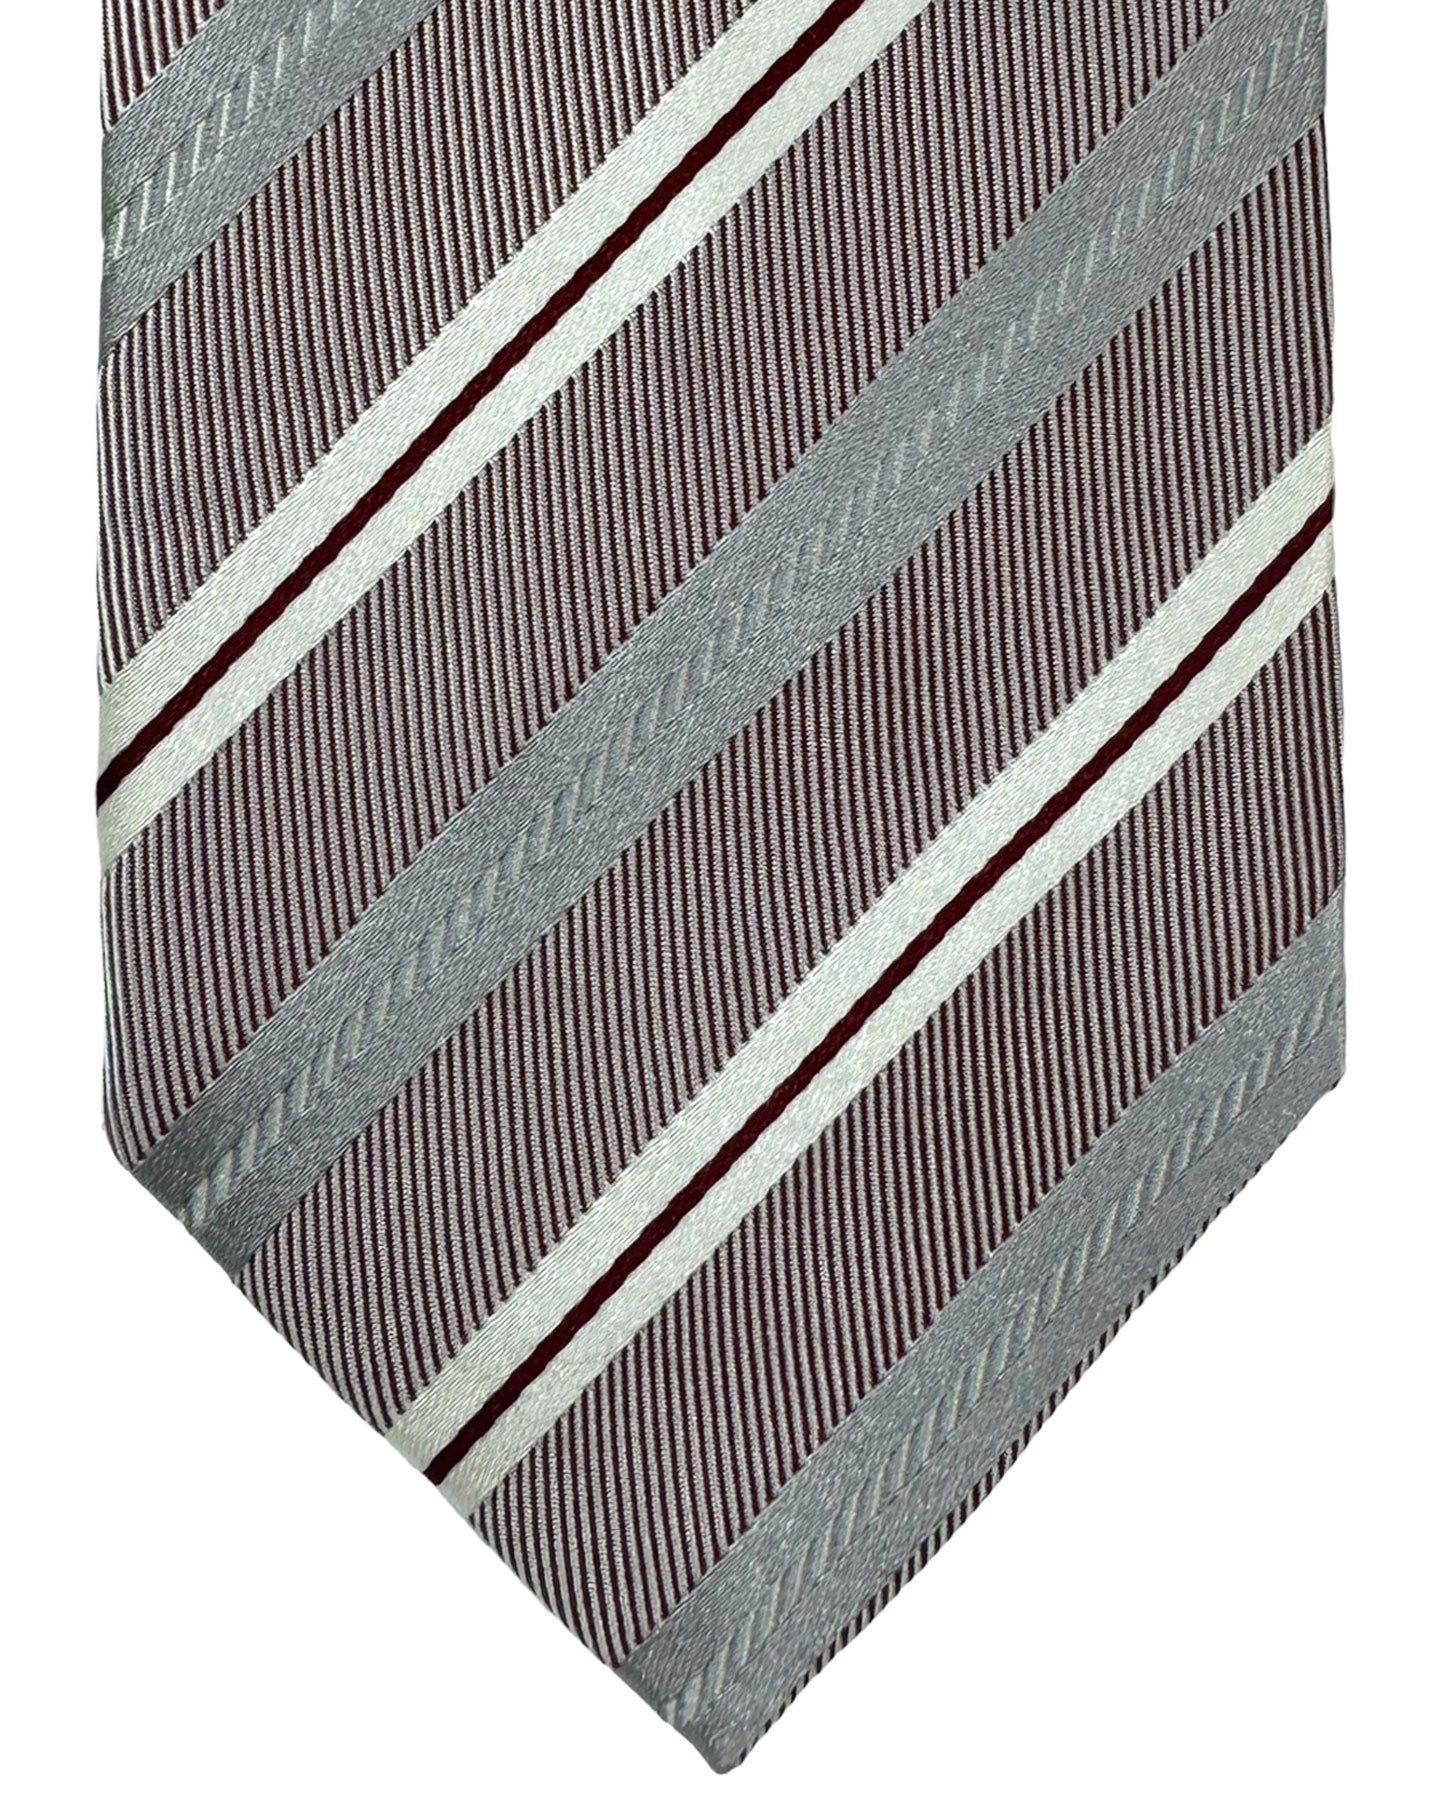 Luigi Borrelli Silk Tie Gray Maroon Stripes